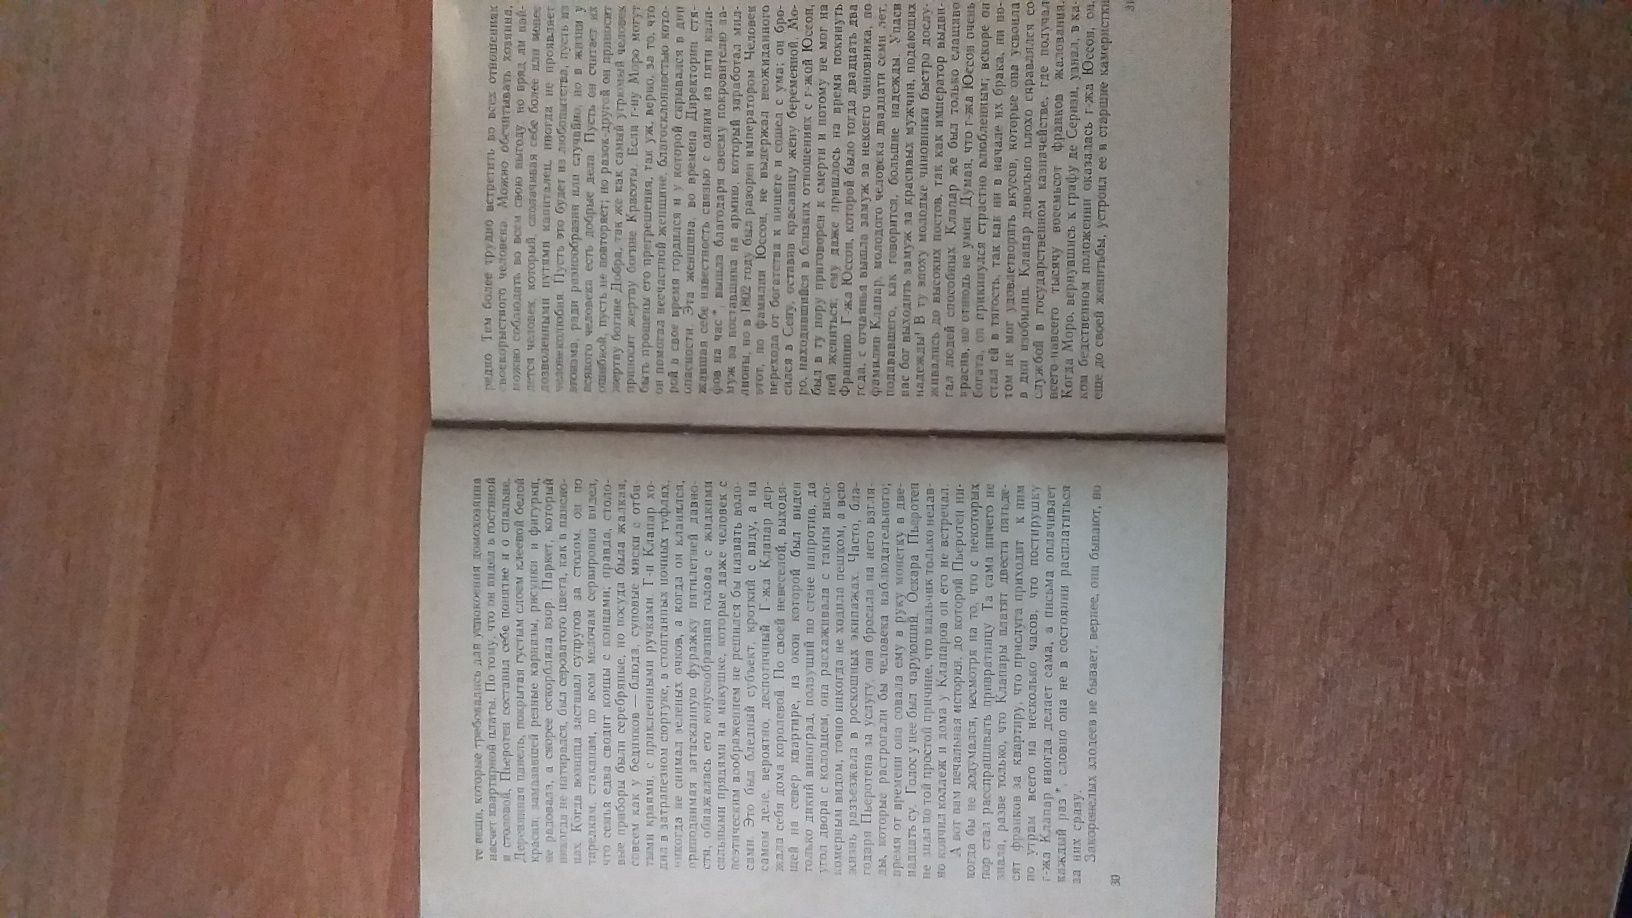 Книга.писатель Оноре де Бальзак .Первые шагиВжизни.1958год.цена250грн